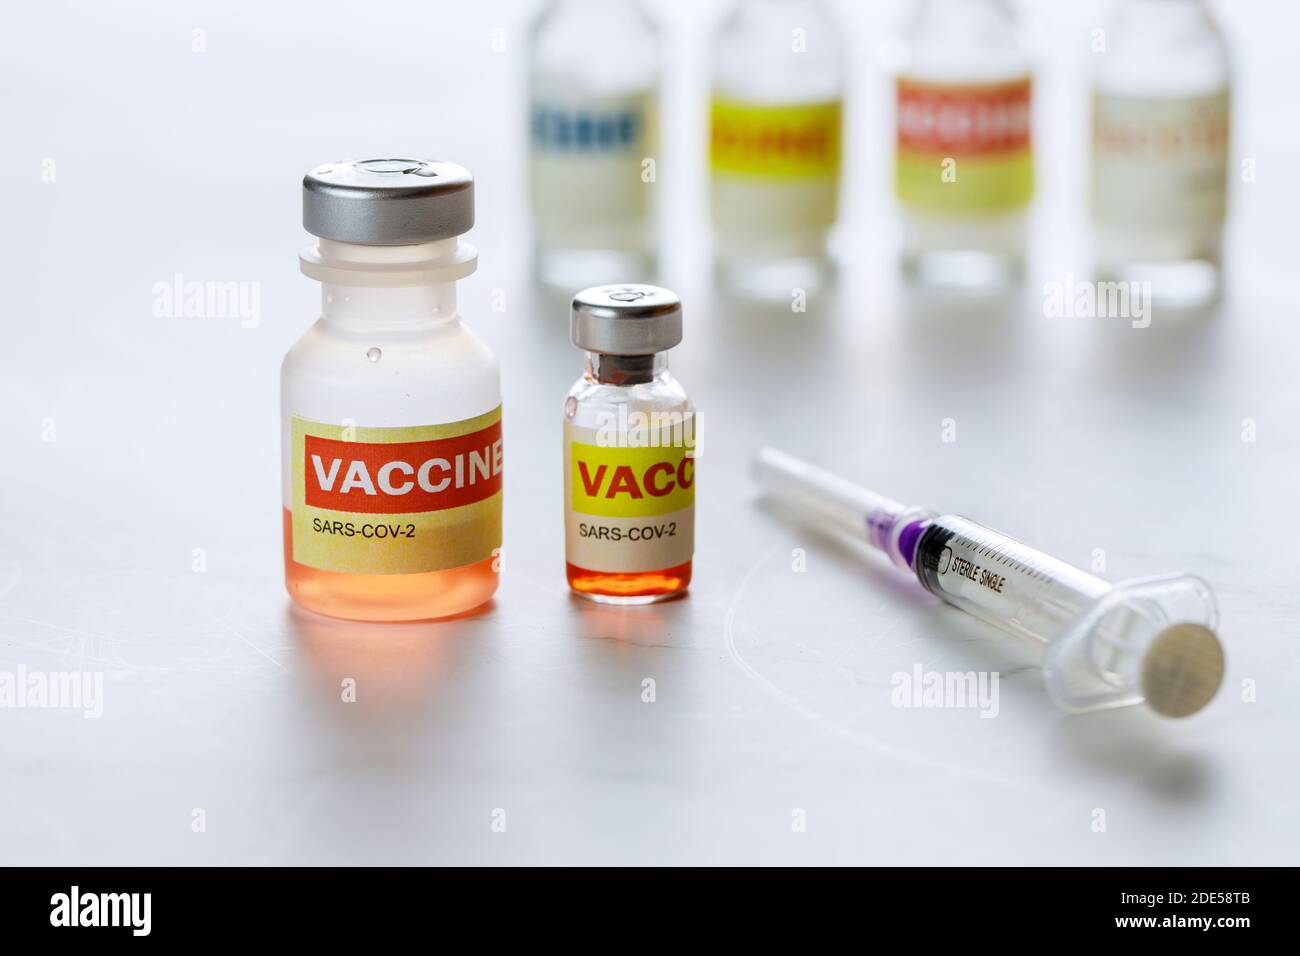 Contenitori di vetro SARS-COV-2 vaccino coronavirus COVID-19 per combattere la pandemia di coronavirus. Foto Stock